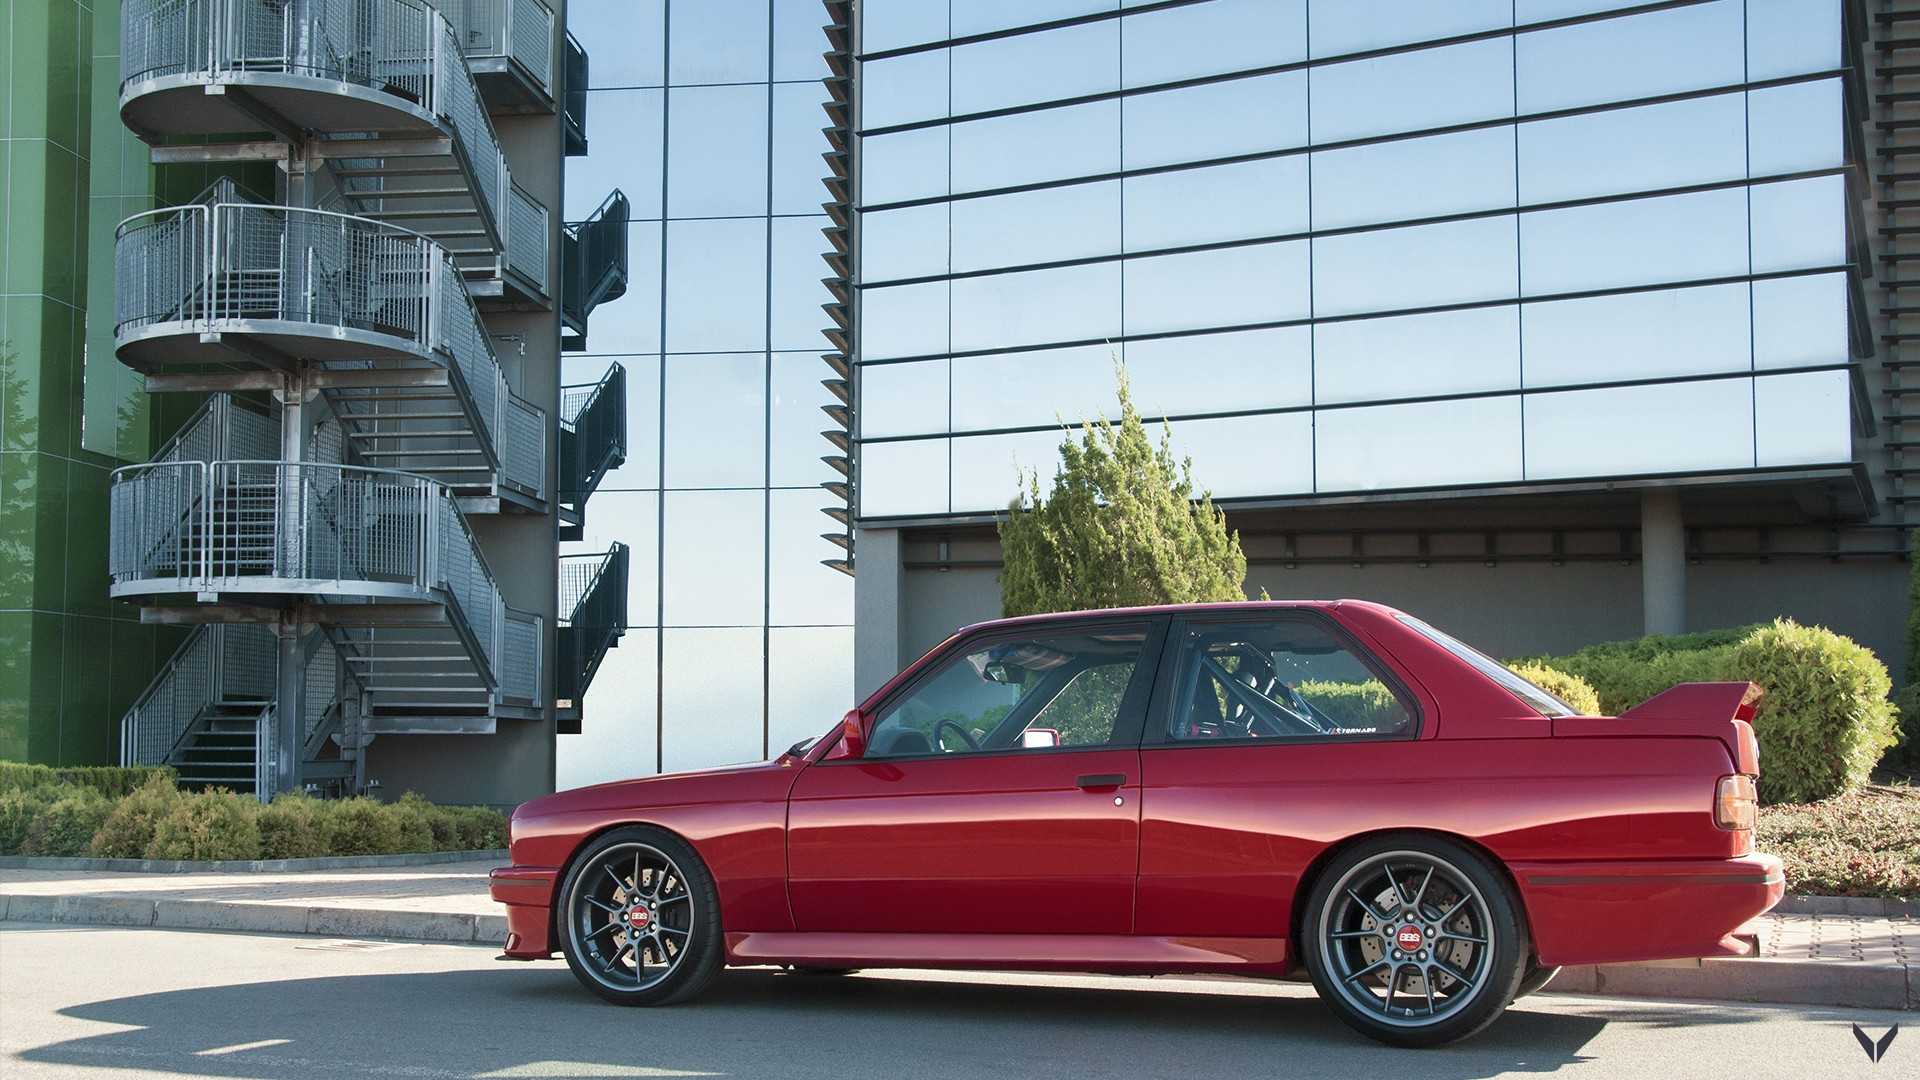 BMW M3 1990 получила новую жизнь благодаря тюнерам